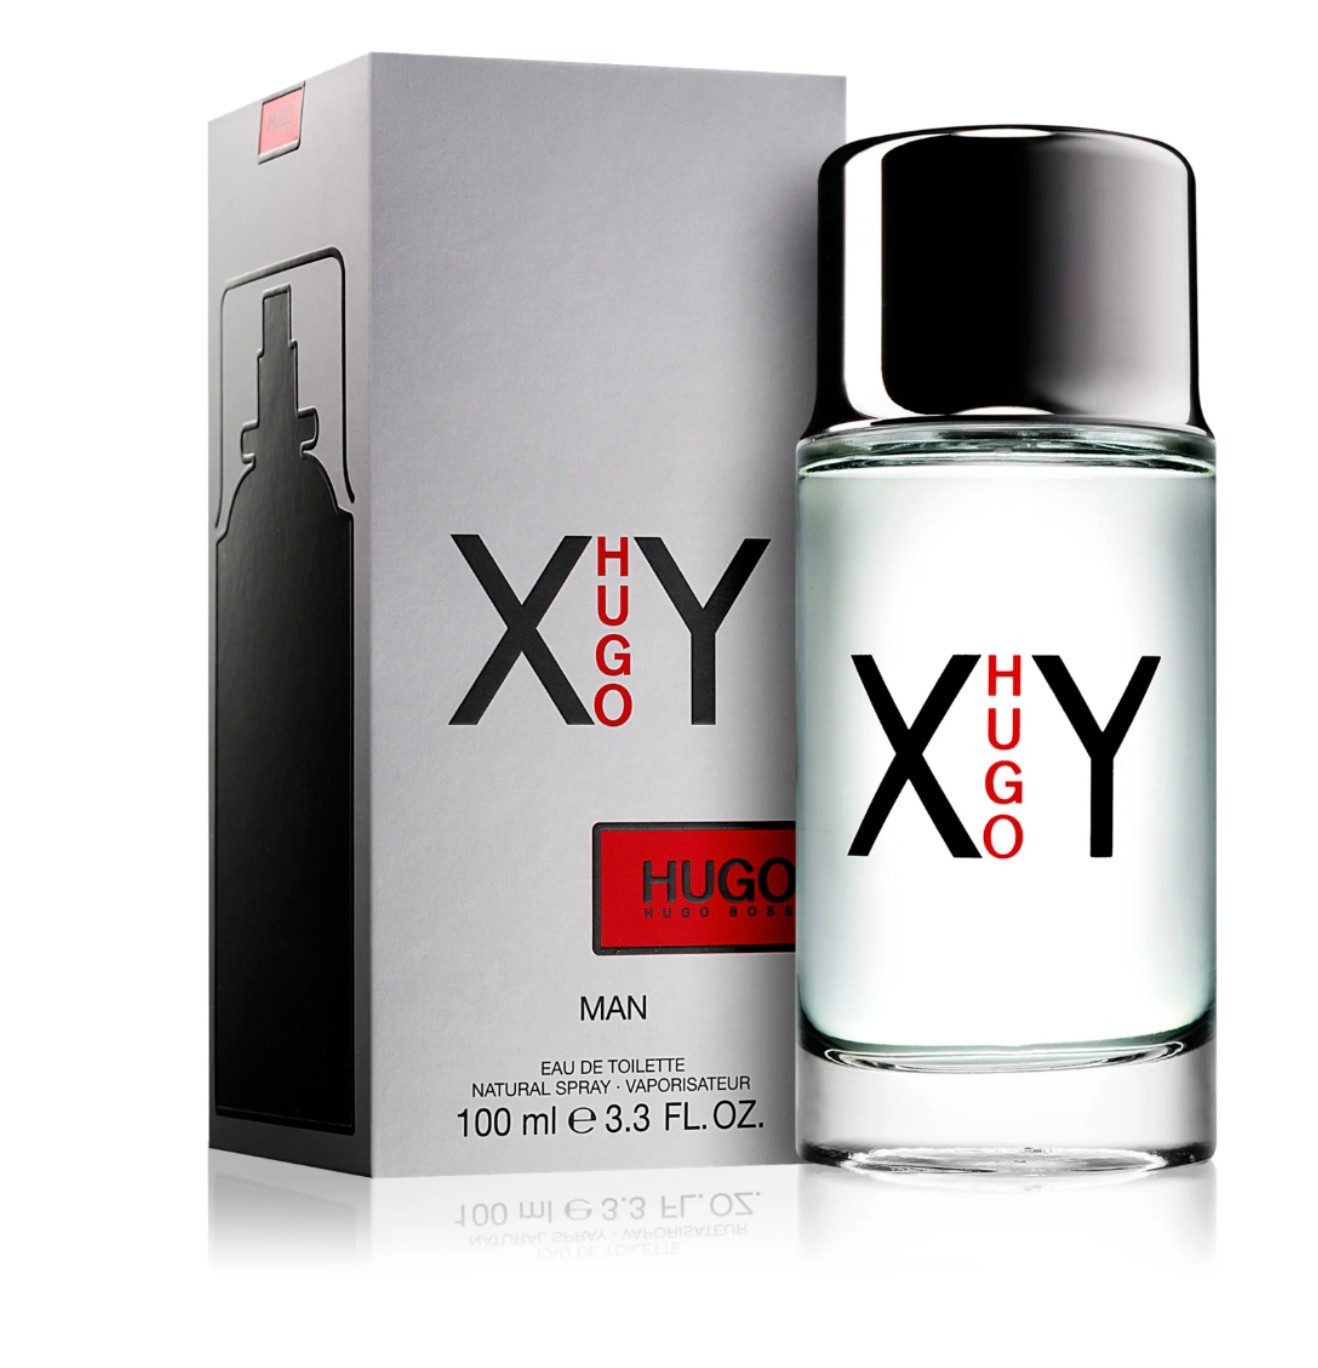 BOSS Eau de Parfum Hugo XY Eau de Toilette Spray Fragrance Parfum Men Versiegelt 100ML, Technologie „Time Release“ den Duft nur allmählich verfliegen lässt